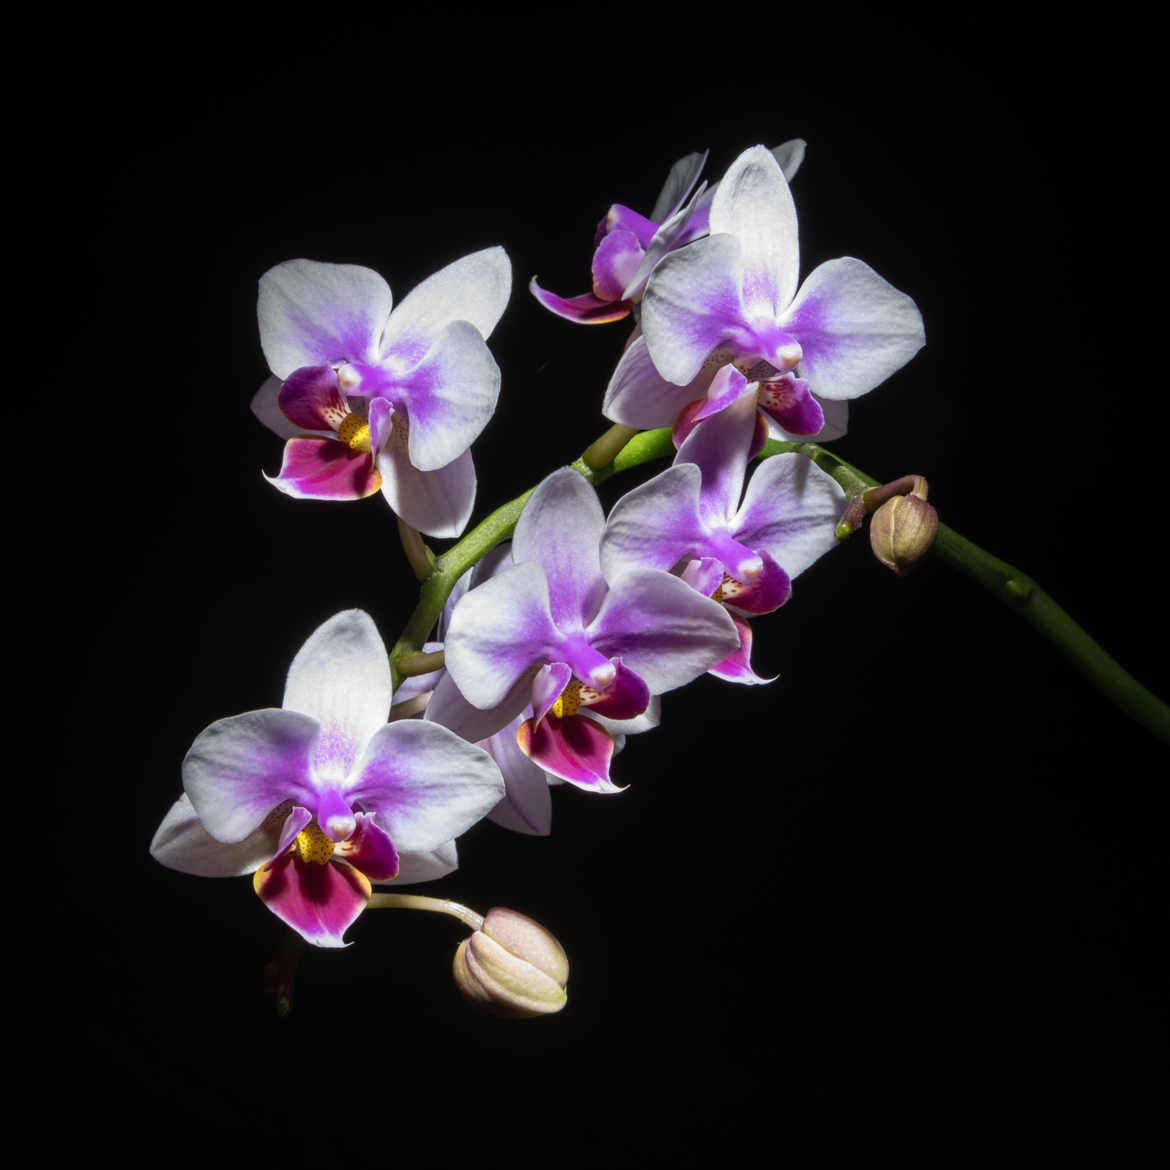 Orchidée sur fond noir